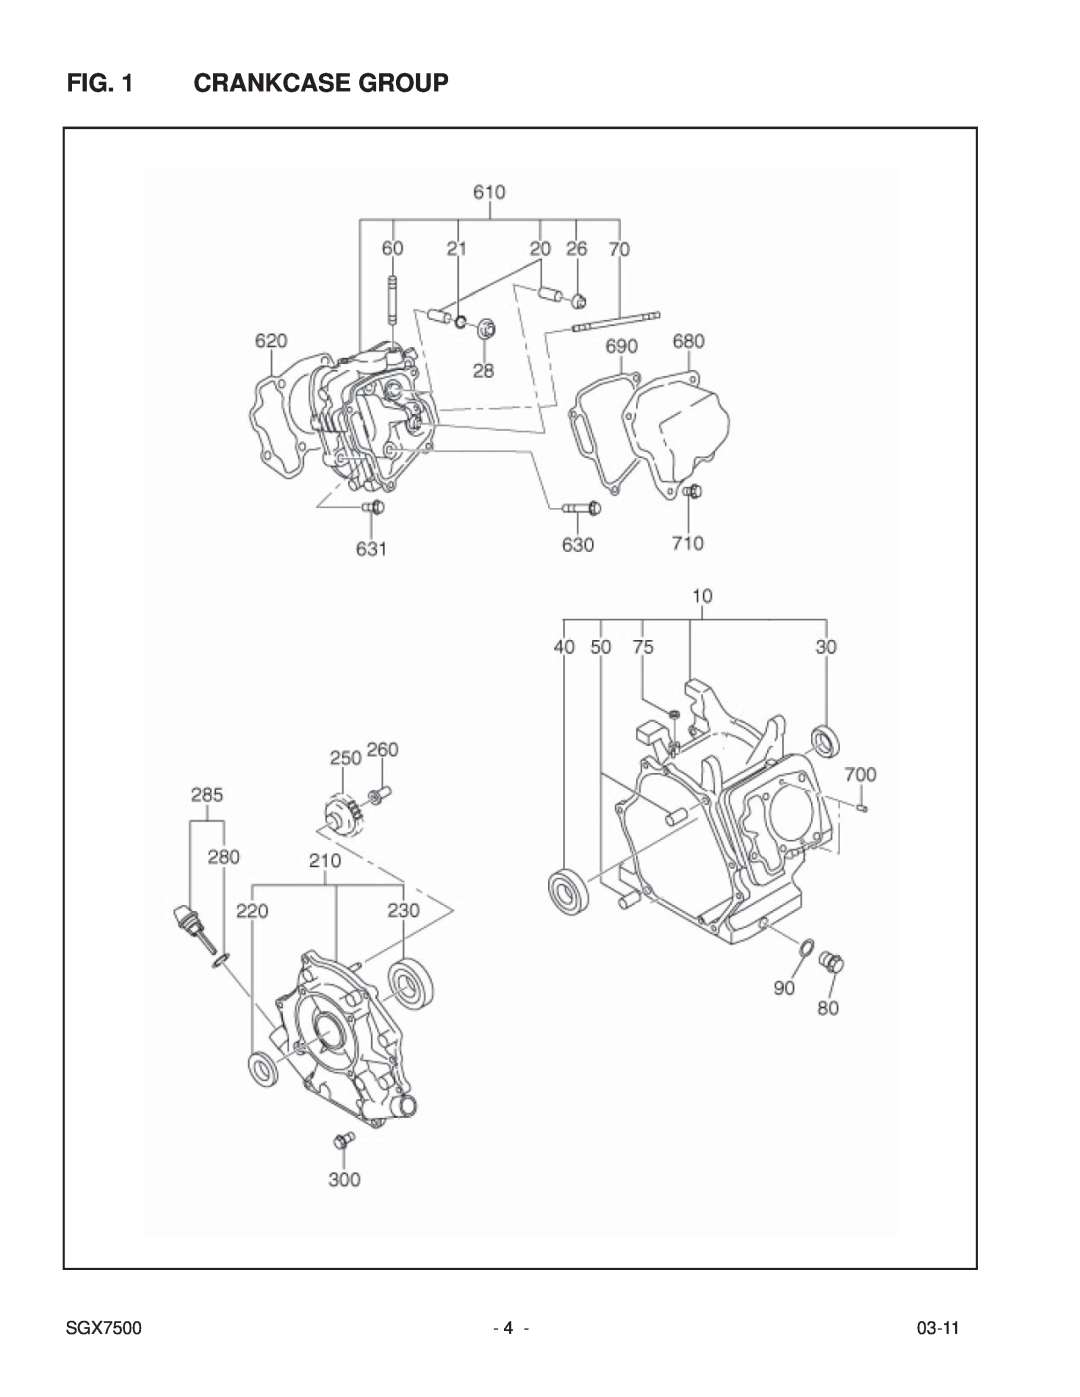 Subaru SGX7500 manual Crankcase Group, 03-11 